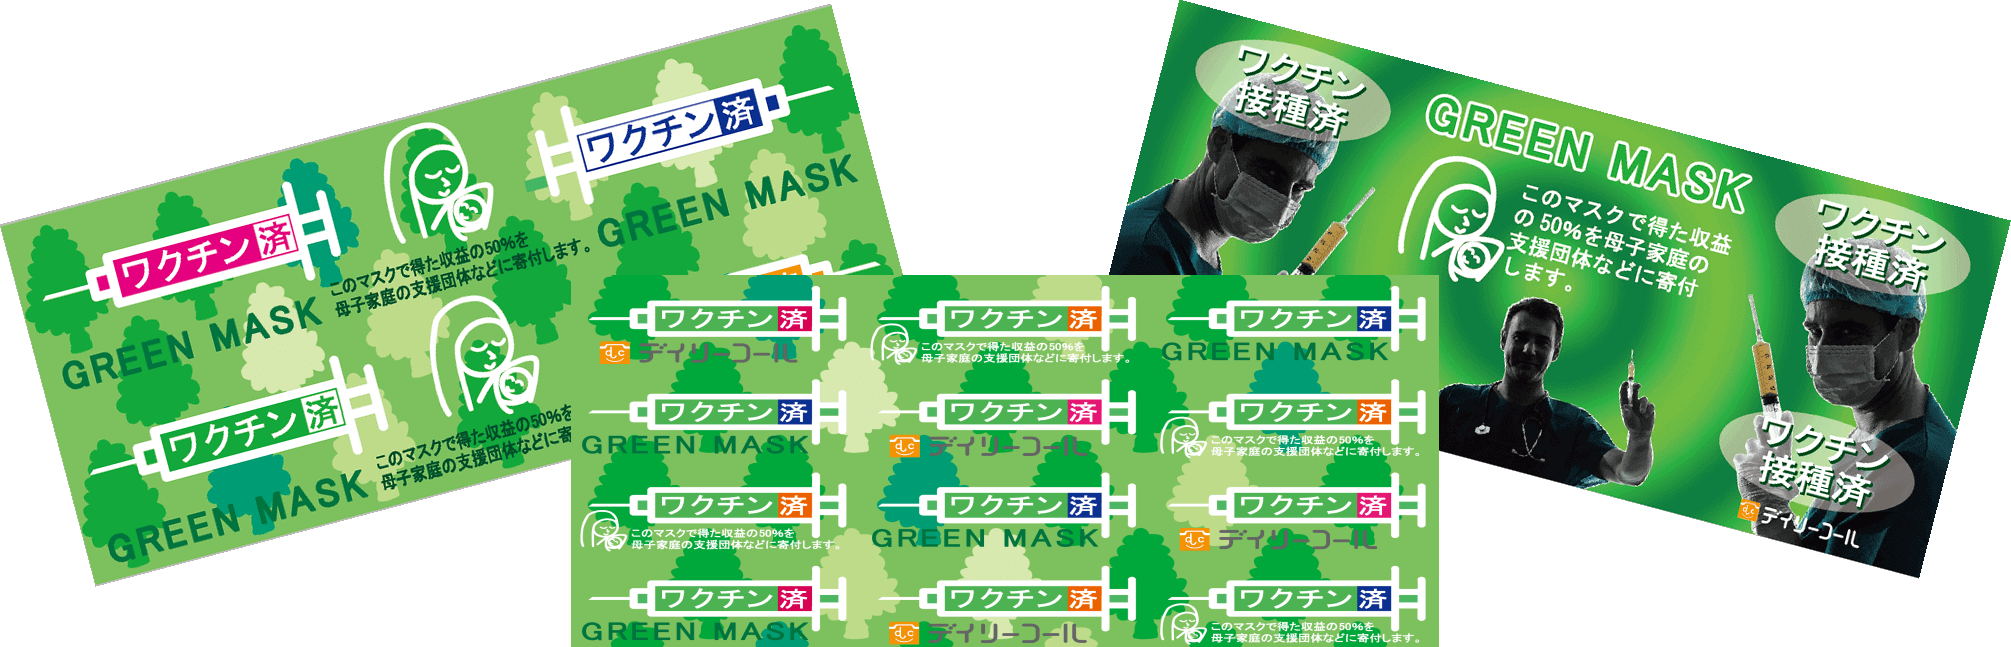 グリーンマスクの正規品の一つ、Dセットです。偽物にご注意下さい。寄付付きのデイリーコール社のロゴマーク入りの物をお買い求め下さい